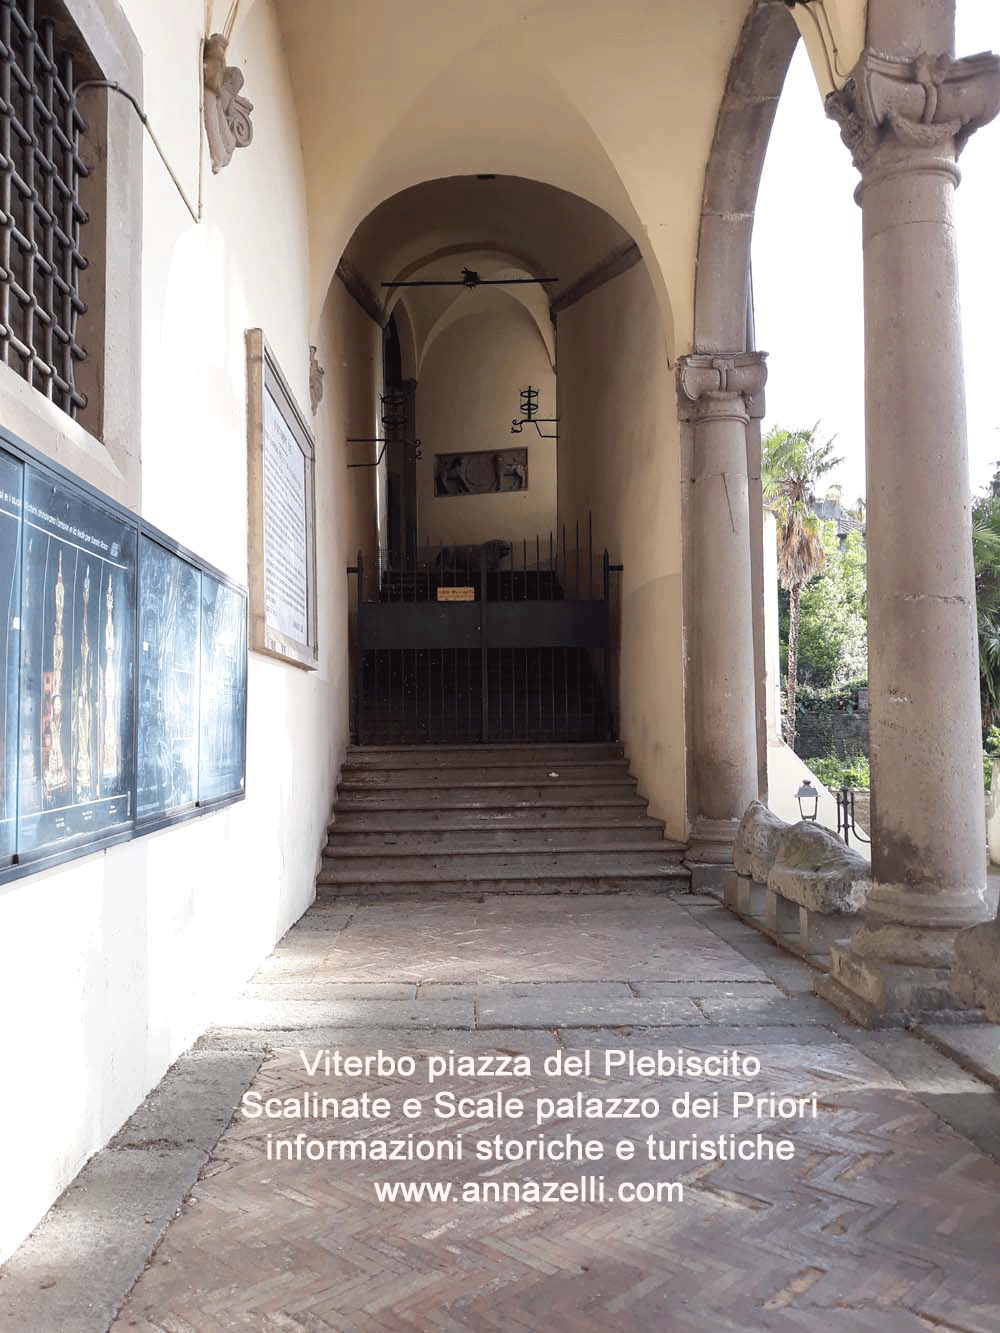 viterboscalinate palazzo dei priori piazza del plebisicito comune foto anna zelli 001